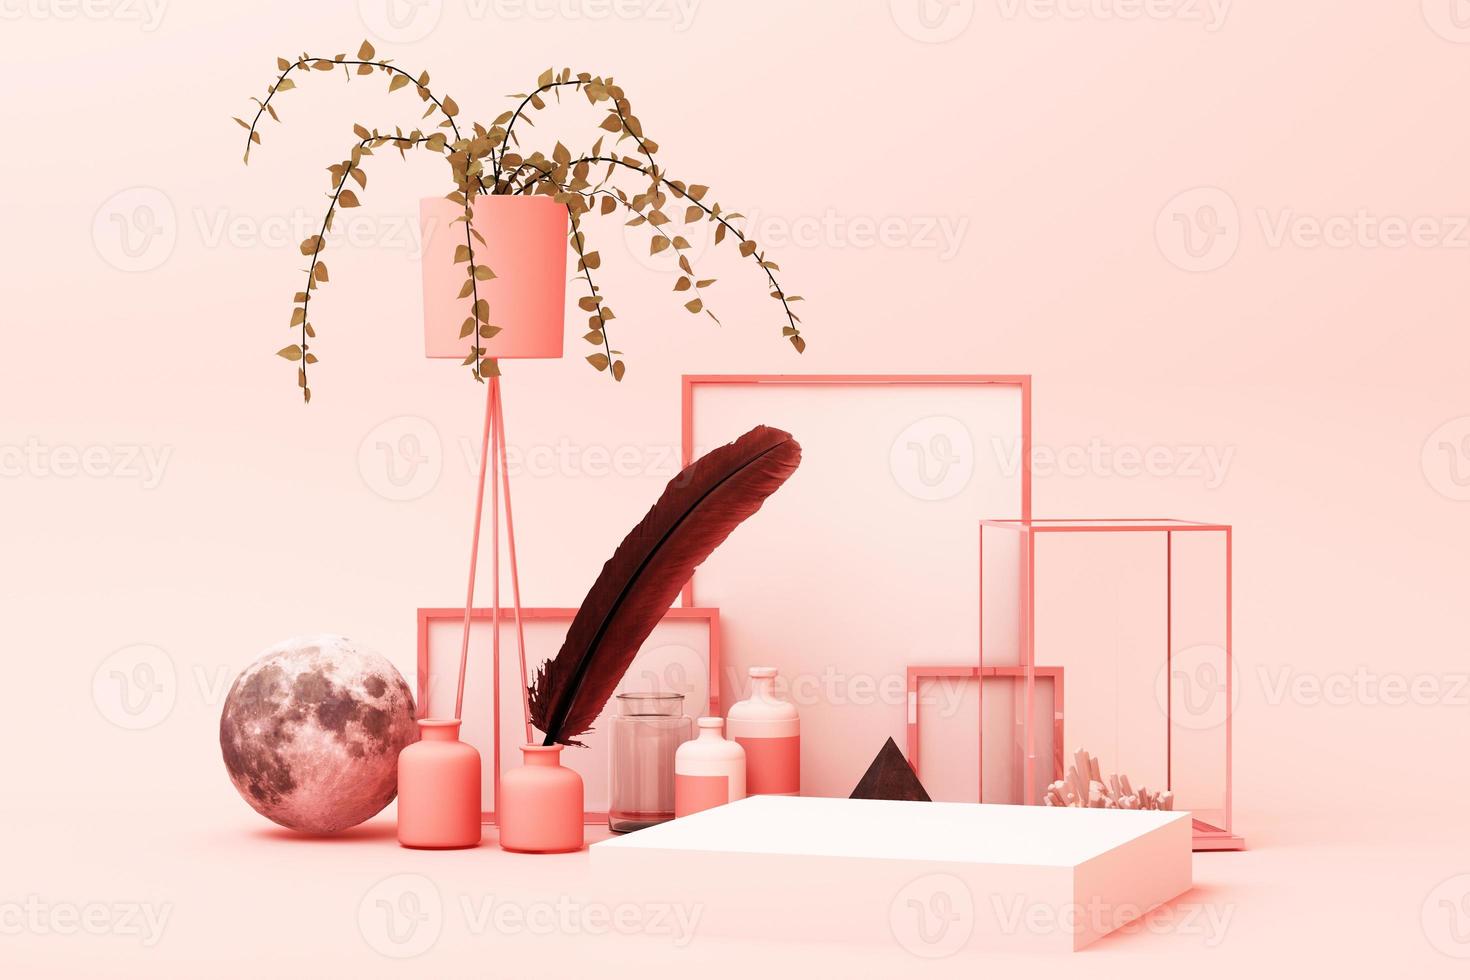 cena de cor rosa pastel de forma geométrica abstrata mínima com decoração e adereço, design para renderização 3d de pódio de exibição de cosméticos ou produtos foto